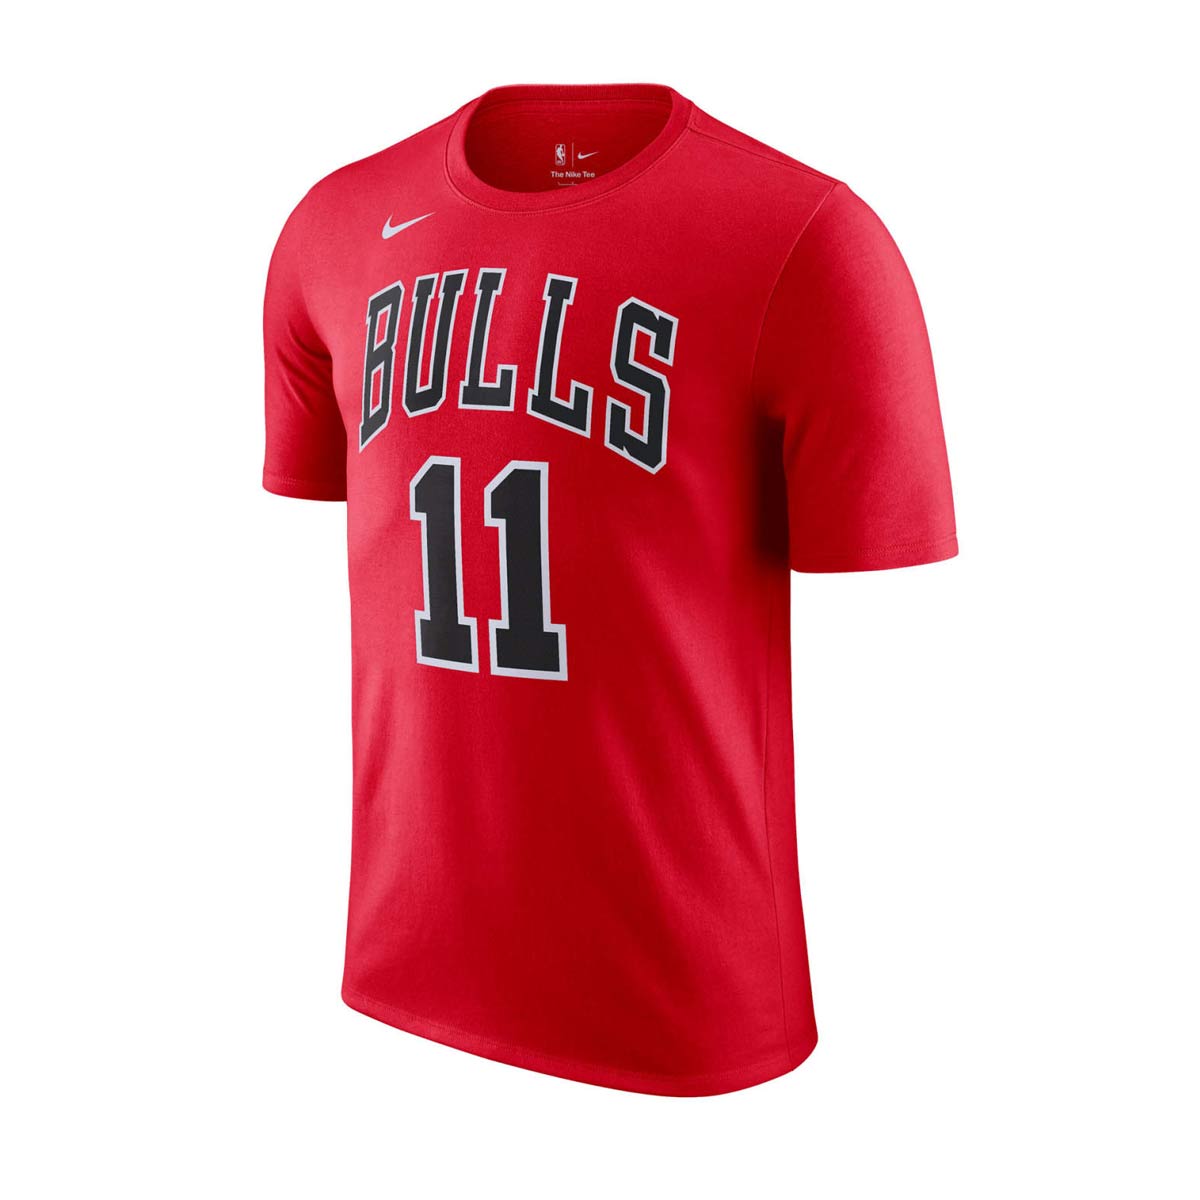 T-Shirt Nba Name Number Derozan Bulls